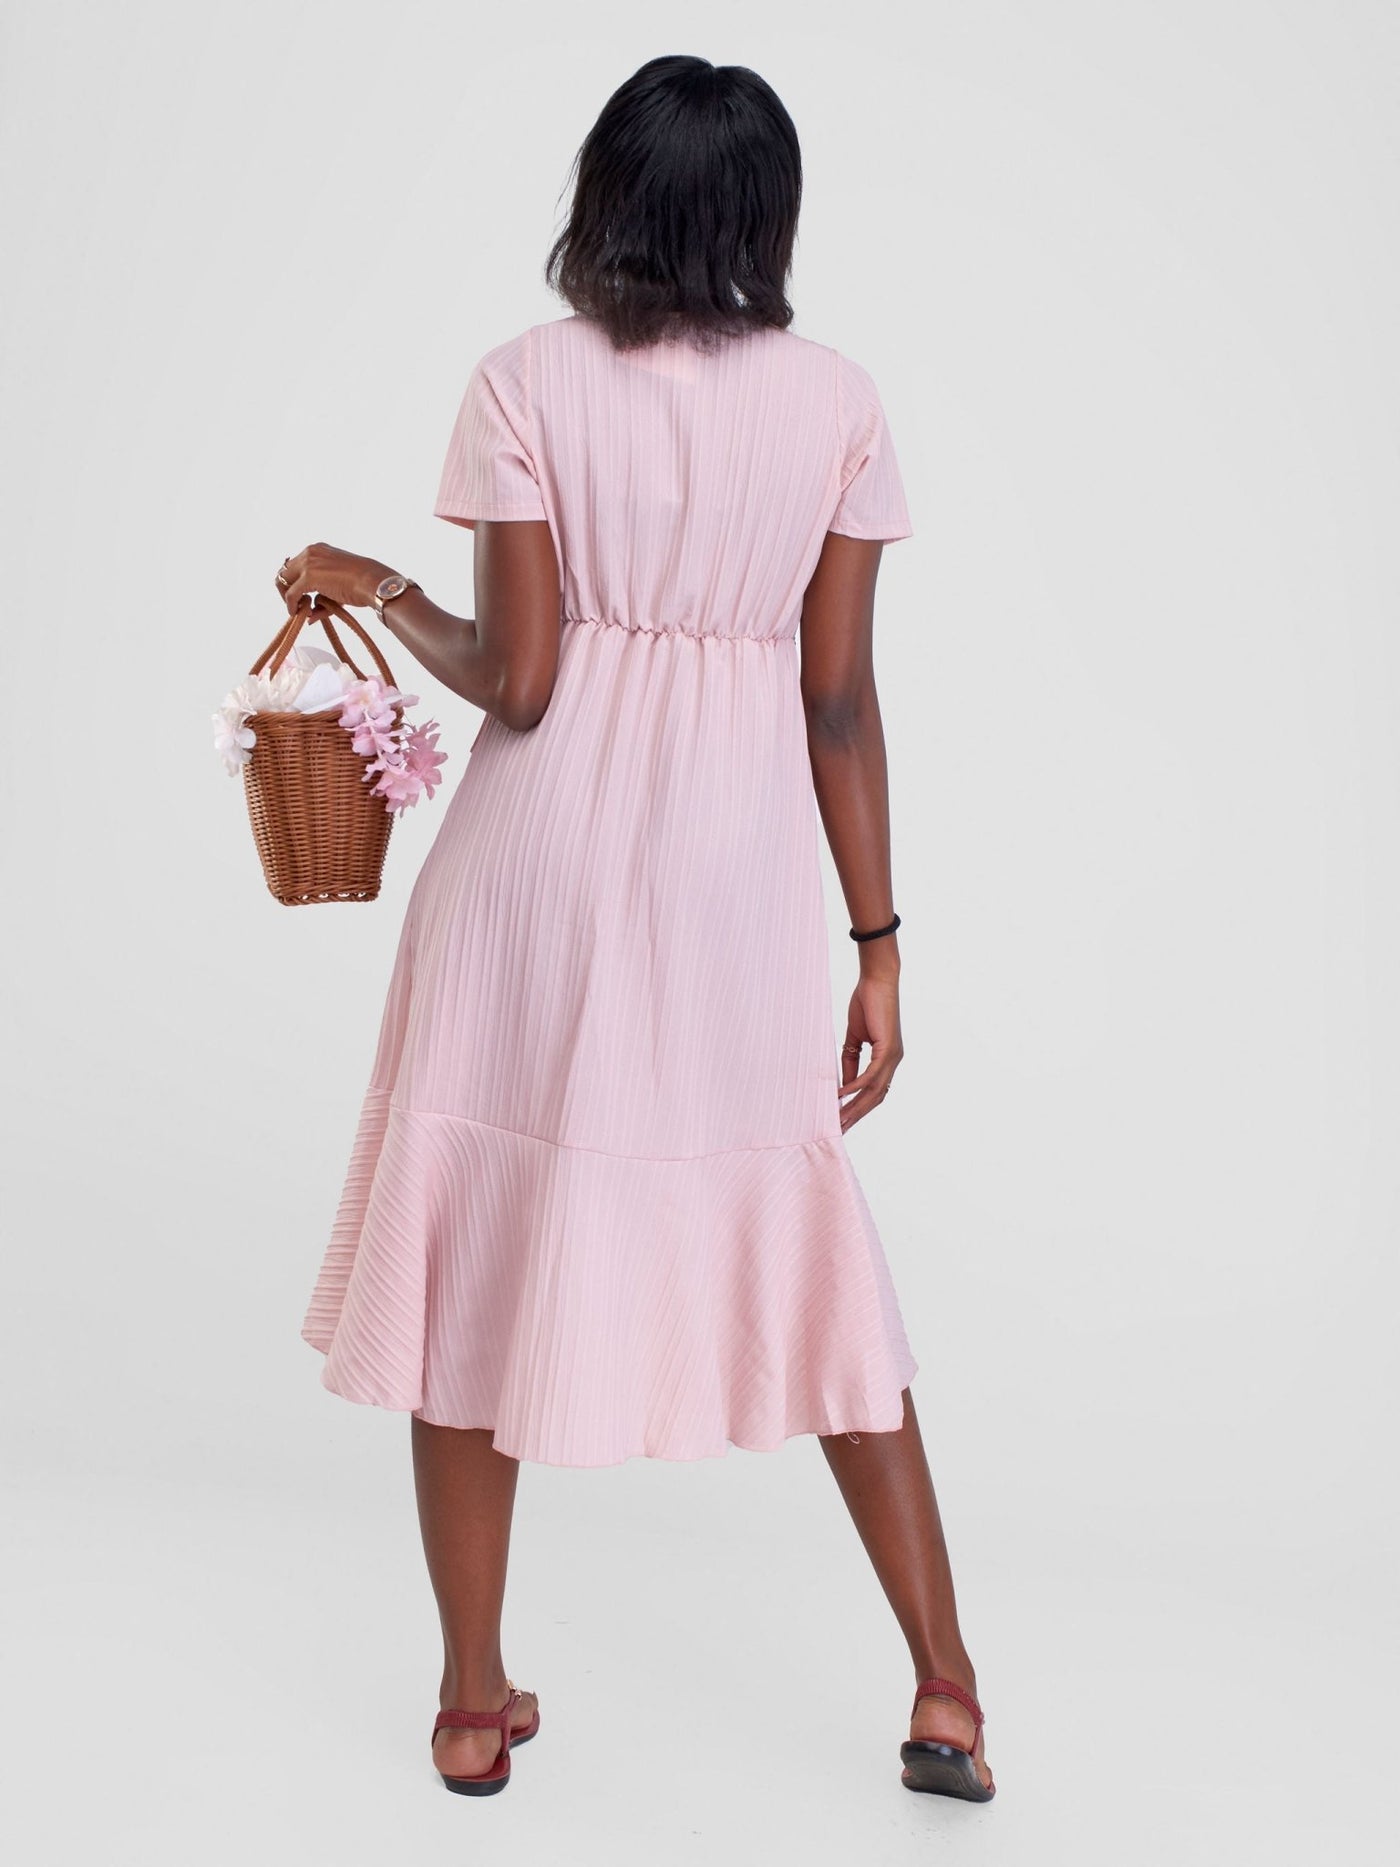 Alara Ruffle Trim Tie Side Wrap Dress - Light Pink - Shopzetu